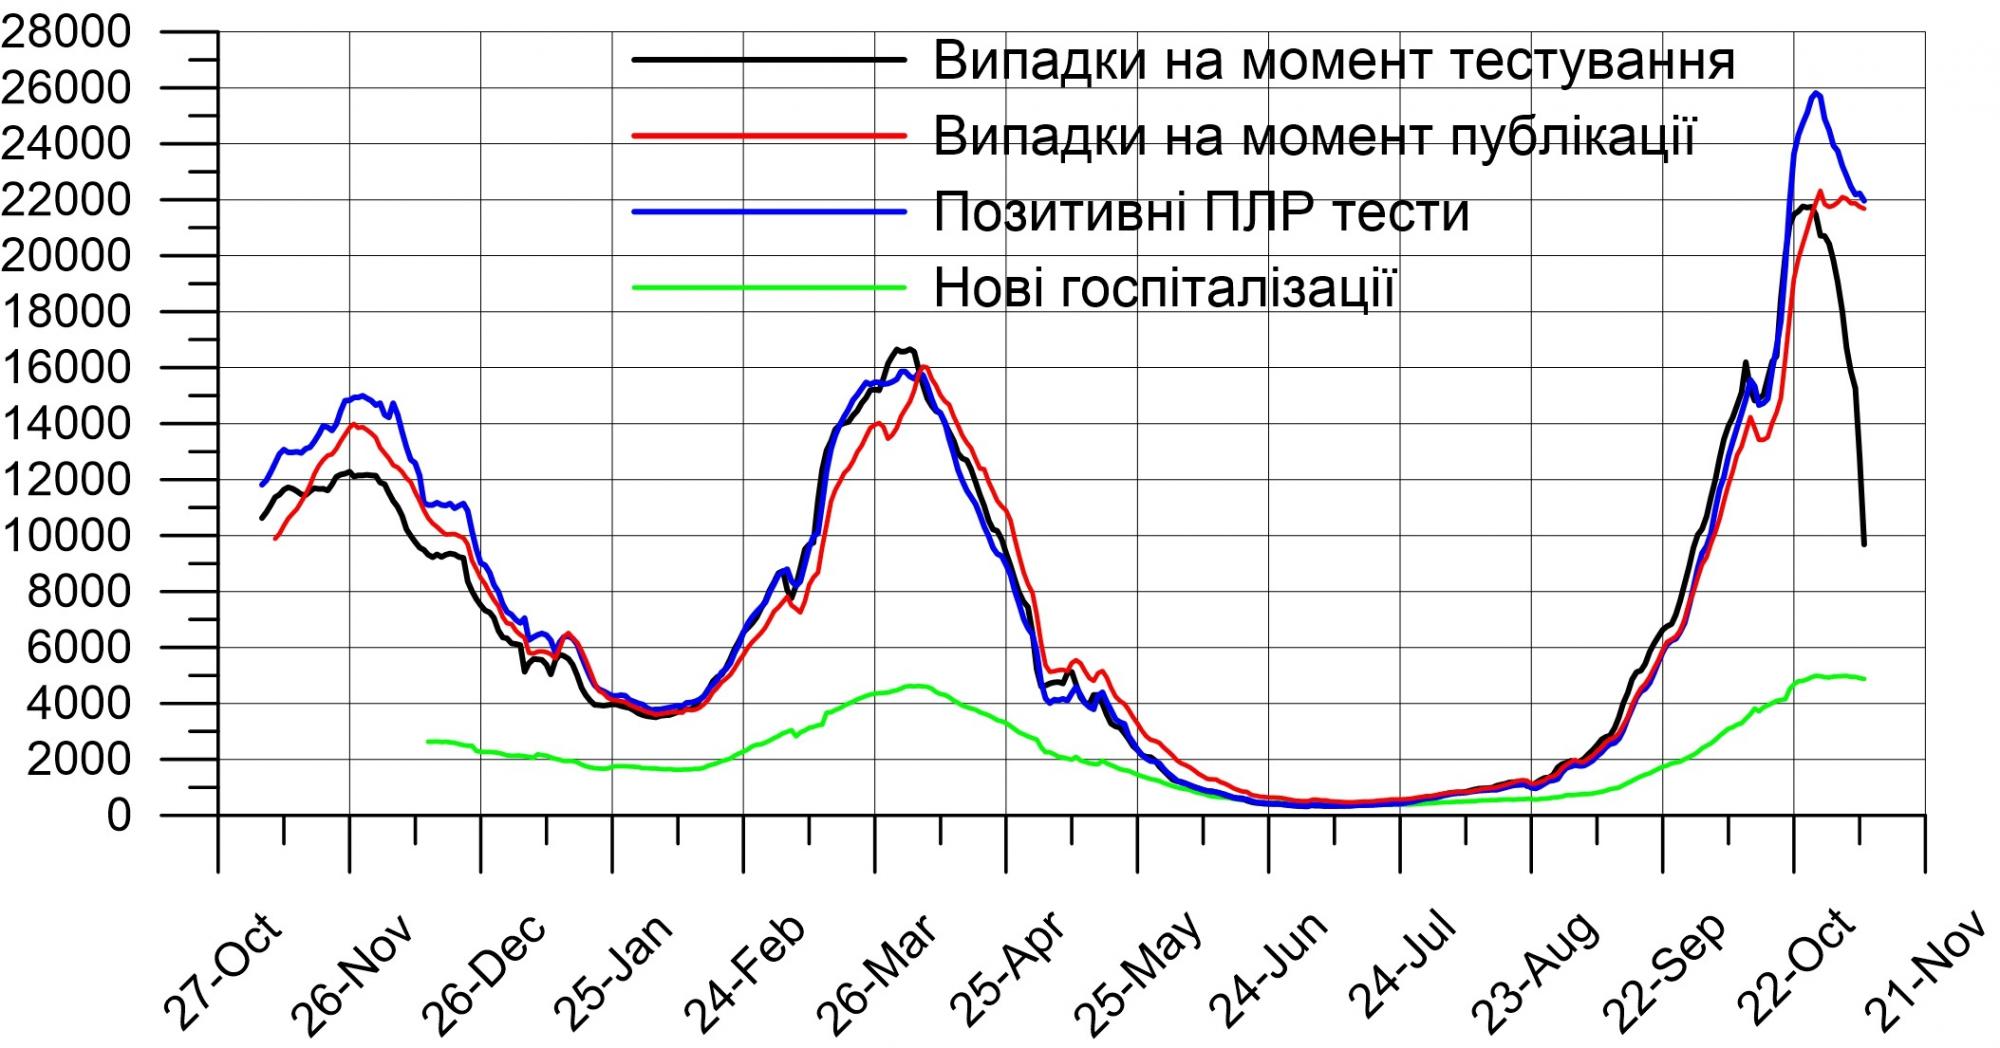 Украина, скорее всего, прошла пик заболеваемости коронавирусом, - НАН